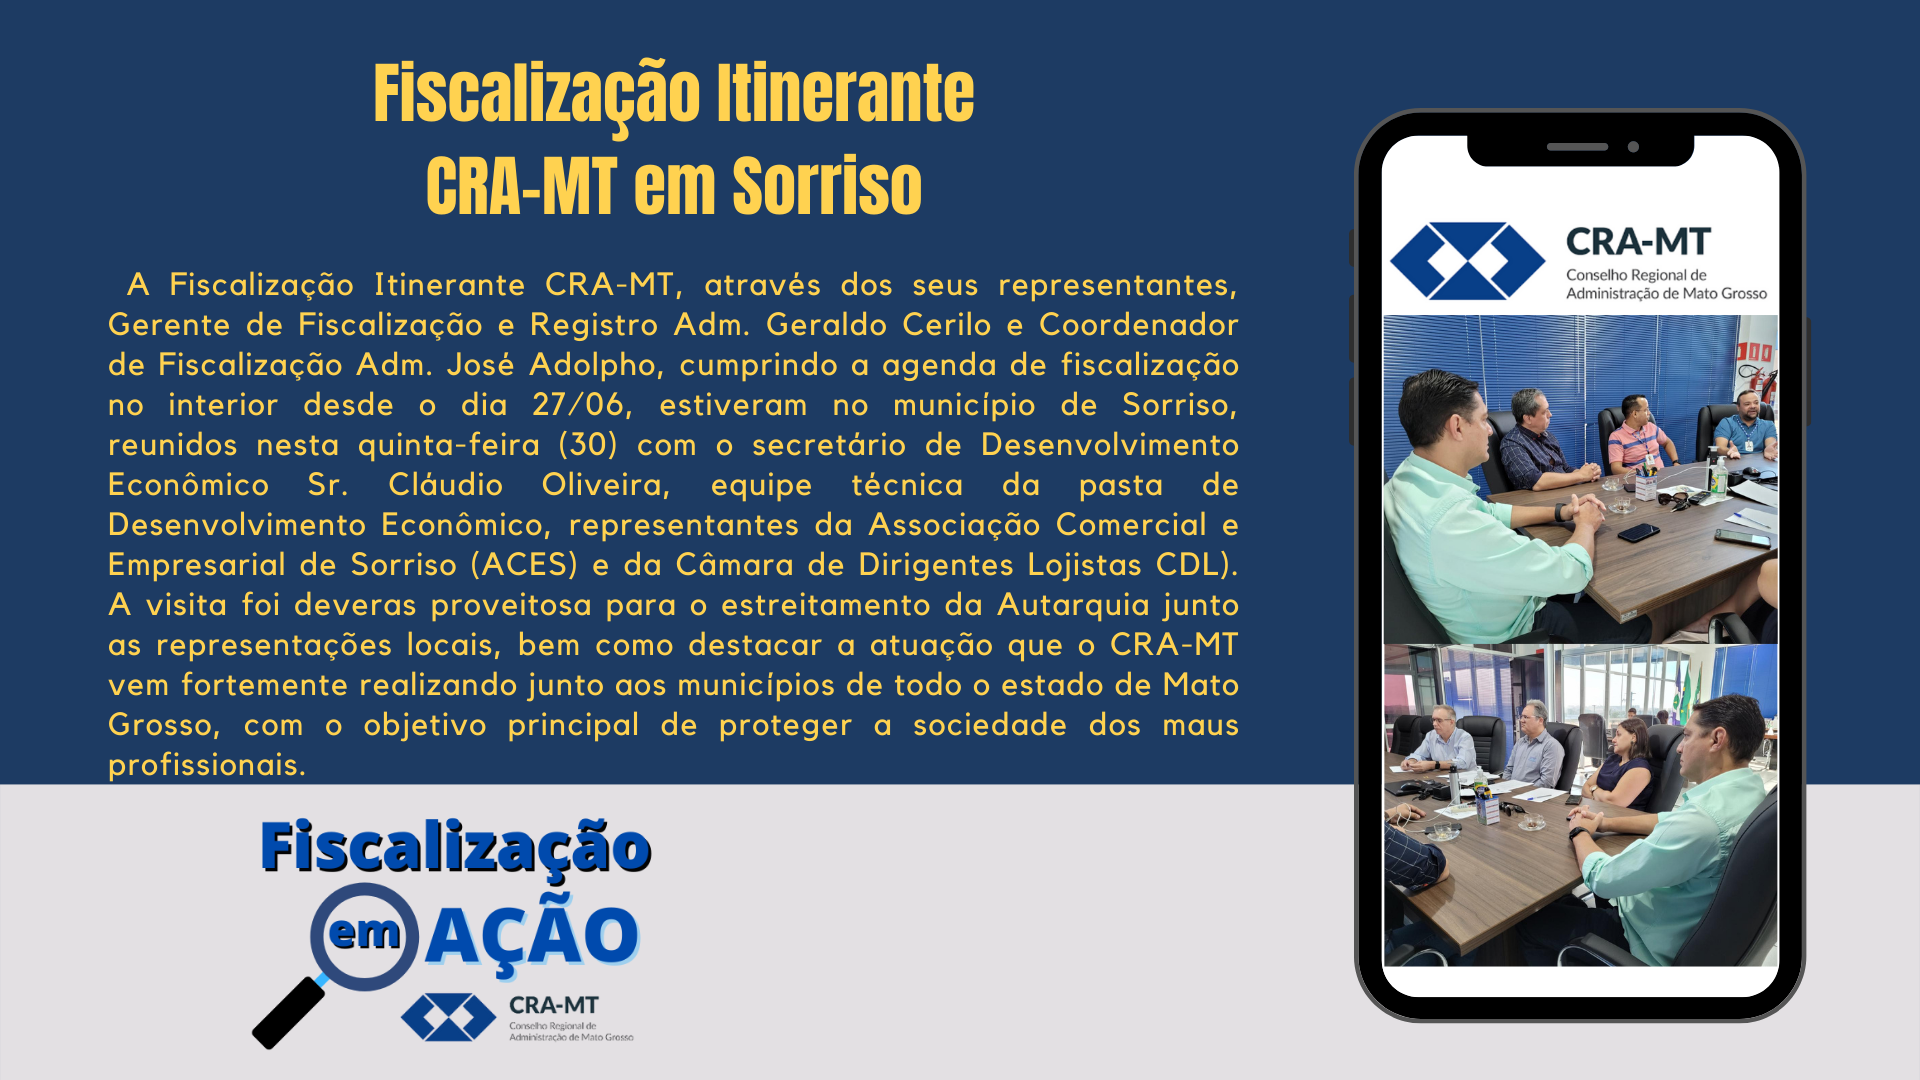 You are currently viewing Fiscalização Itinerante CRA-MT em Sorriso